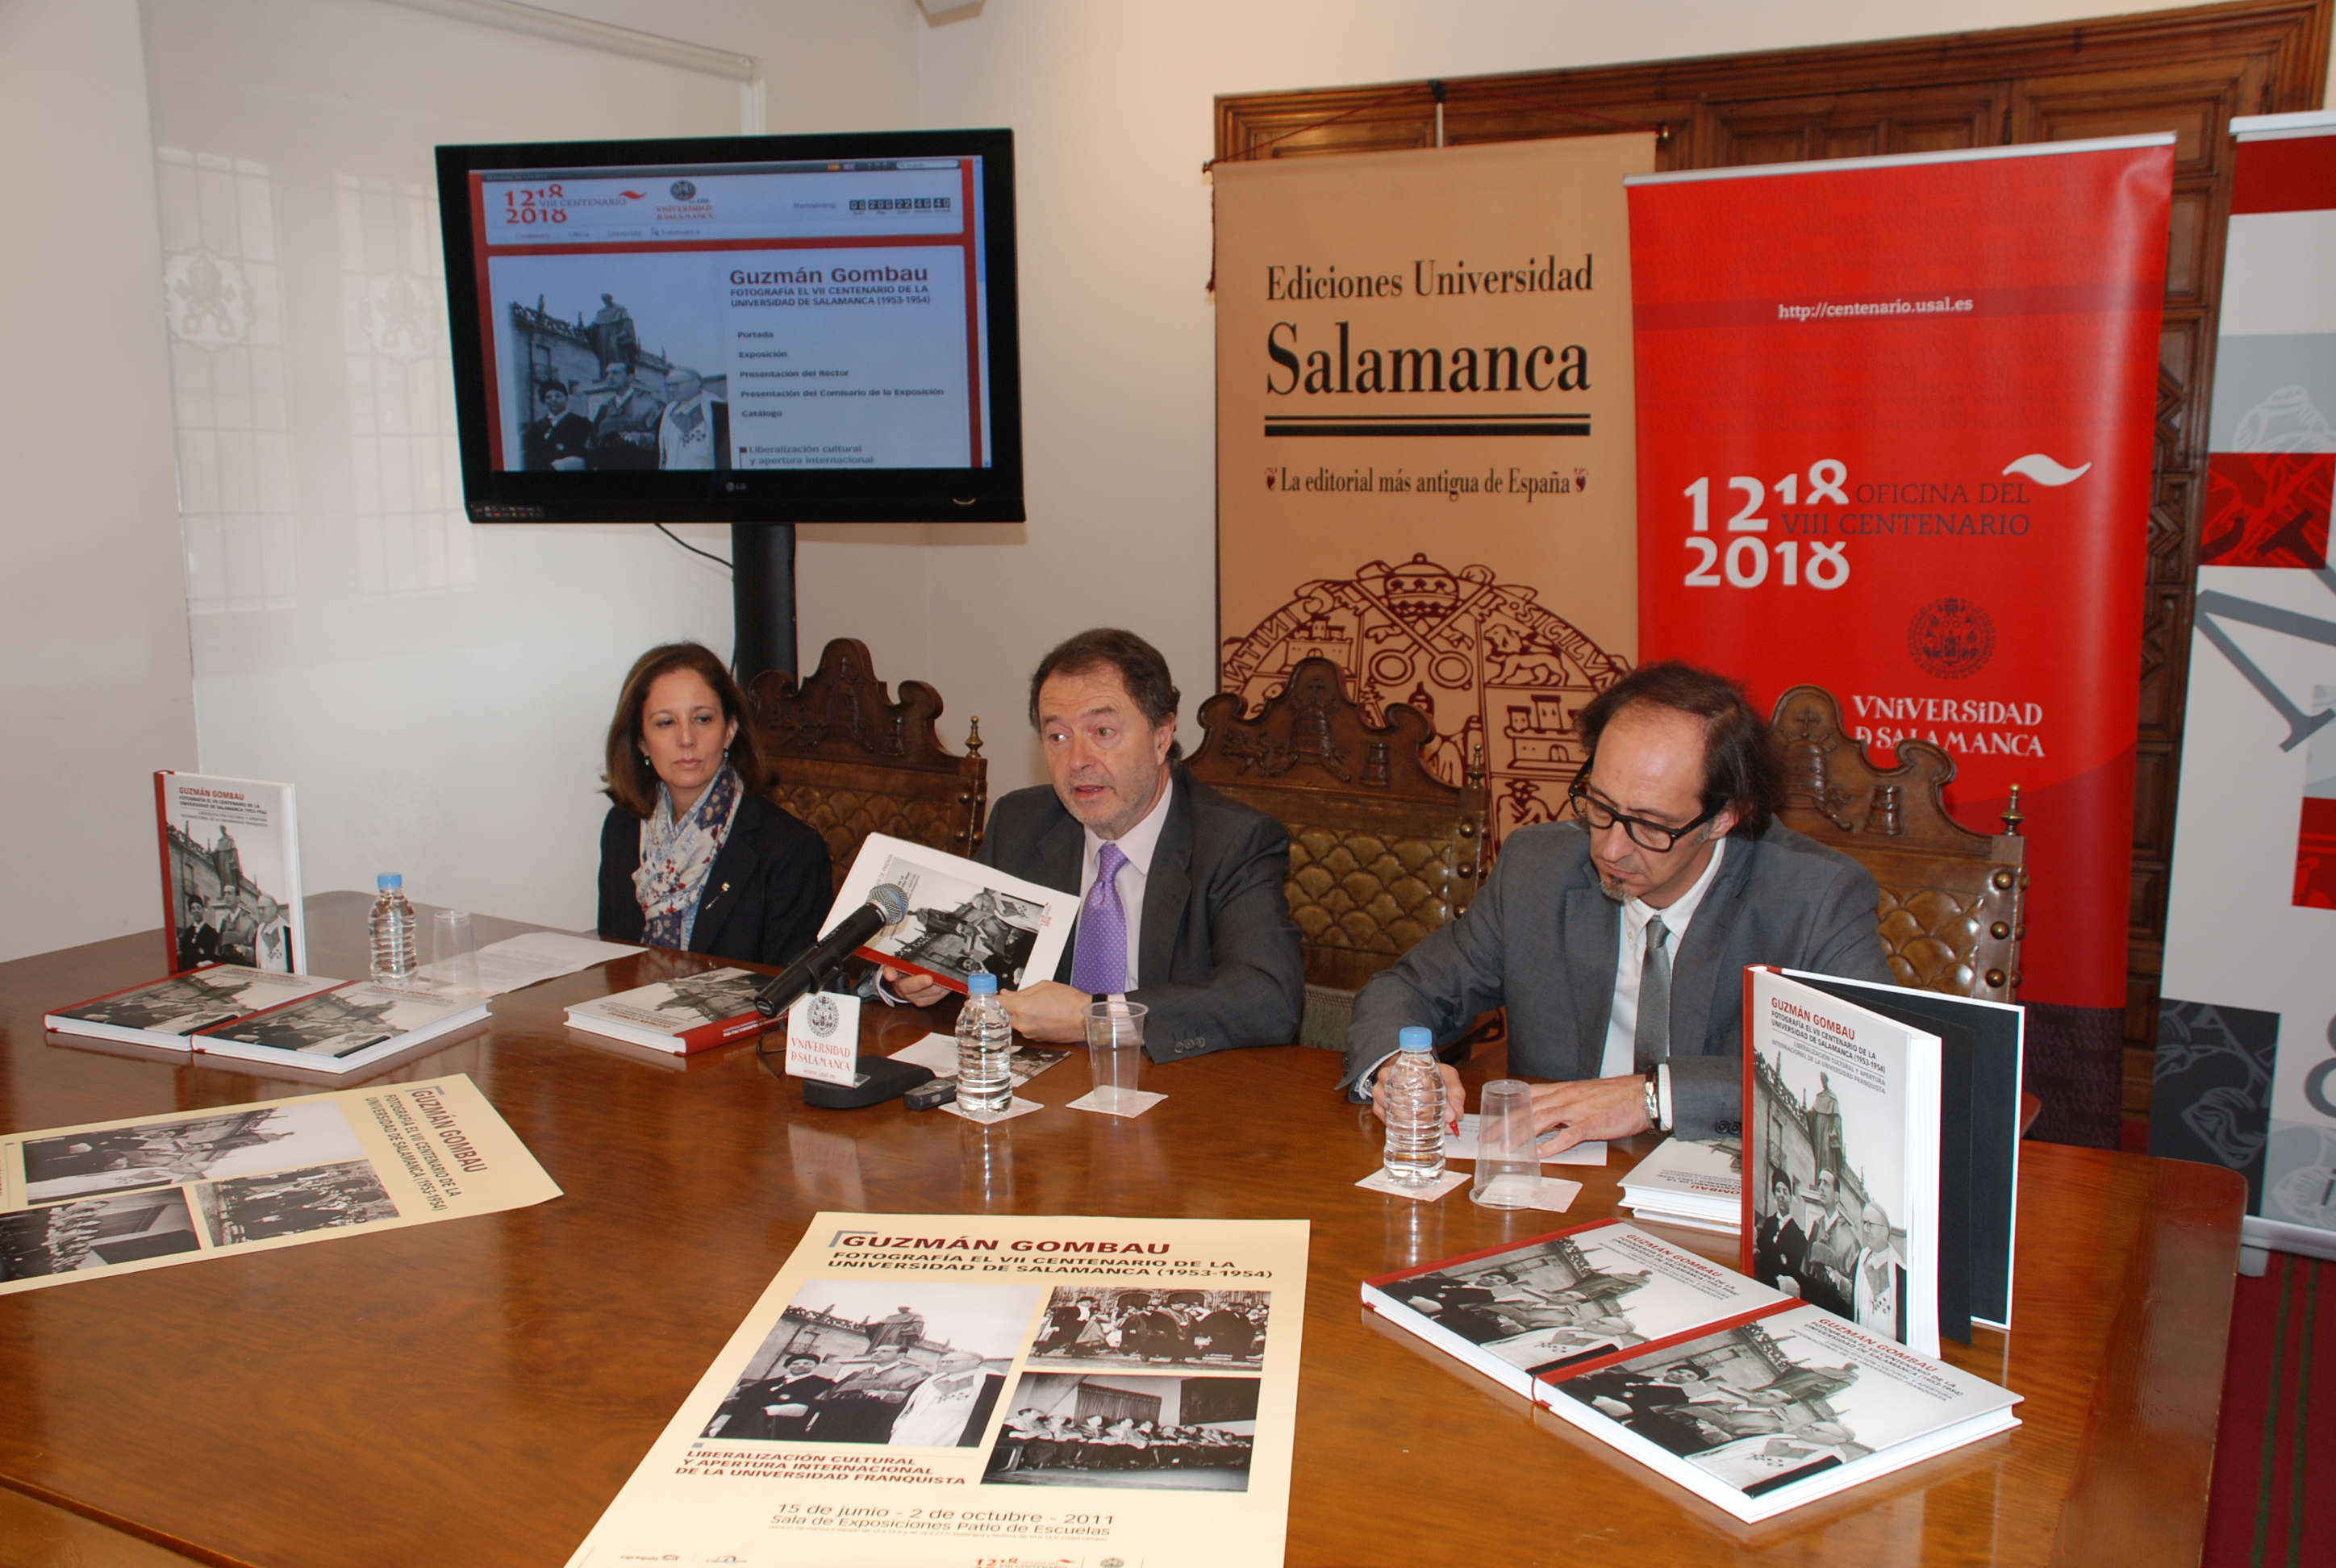 Presentación de la exposición "Guzmán Gombáu fotografía el VII Centenario de la Universidad de Salamanca (1953-1954)"